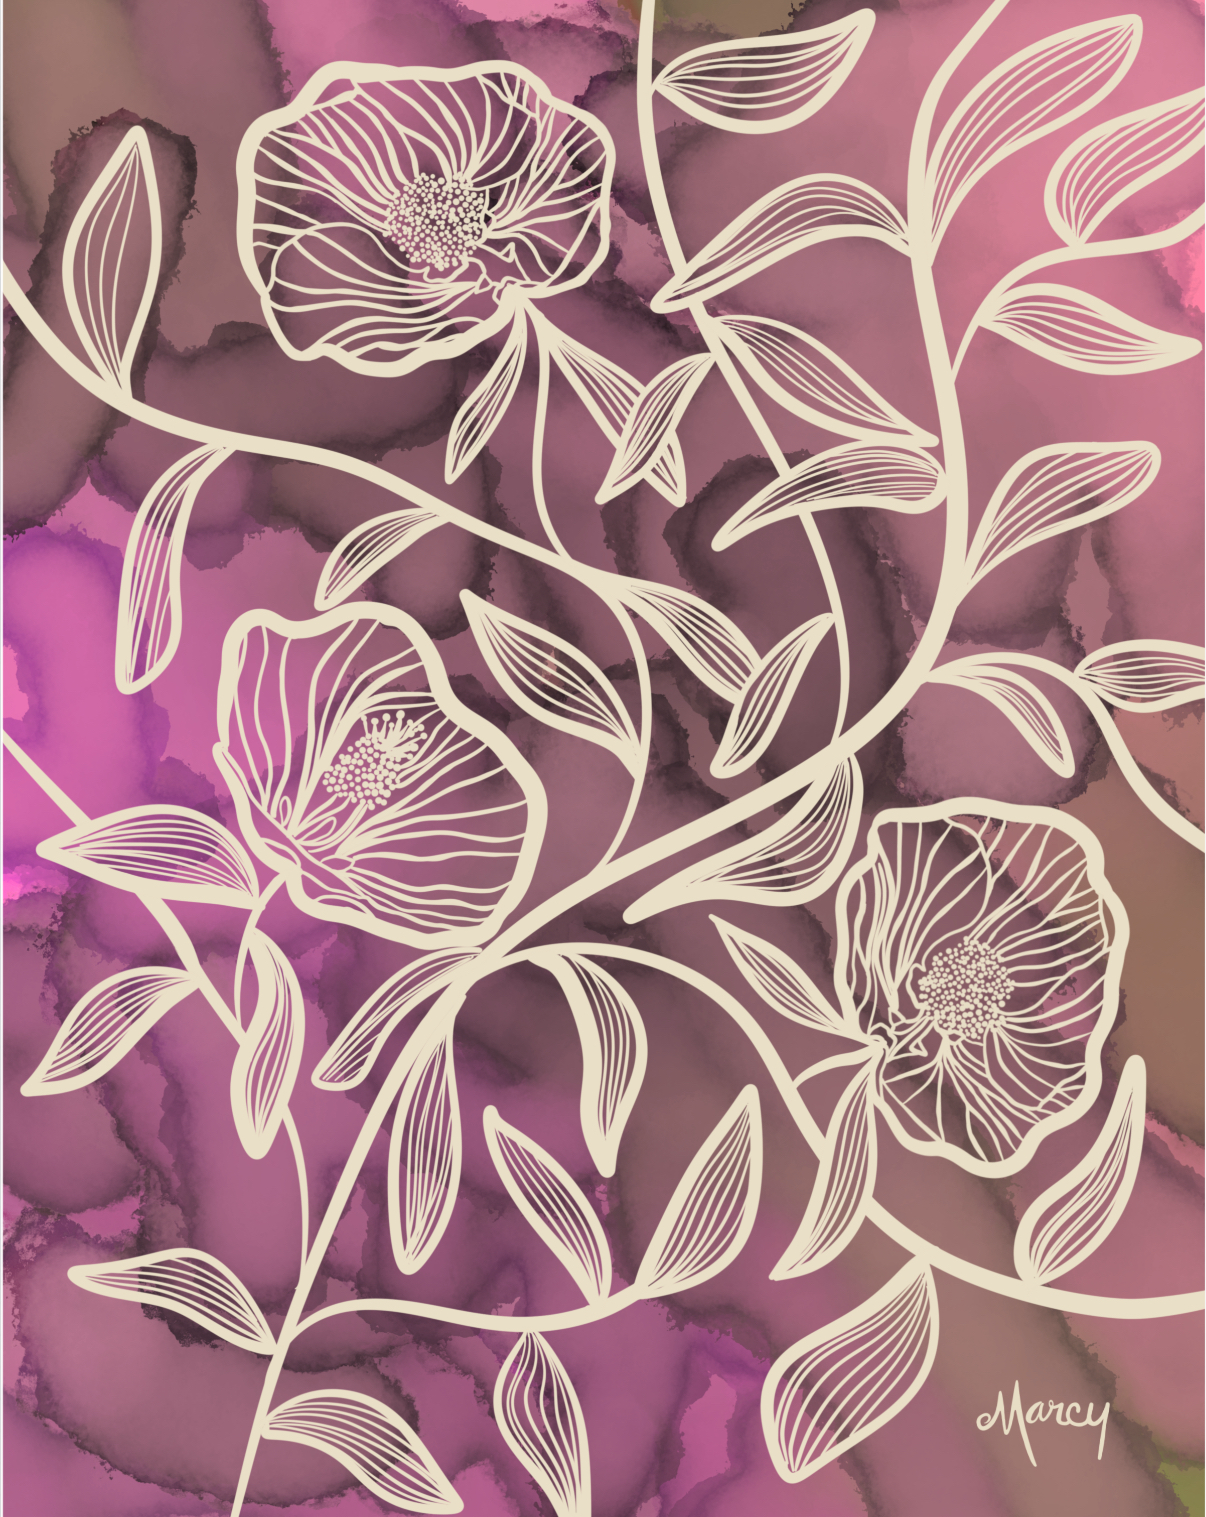 Flowering Maples on Pink Alcohol Ink Background | Digital Illustration | Digital Download